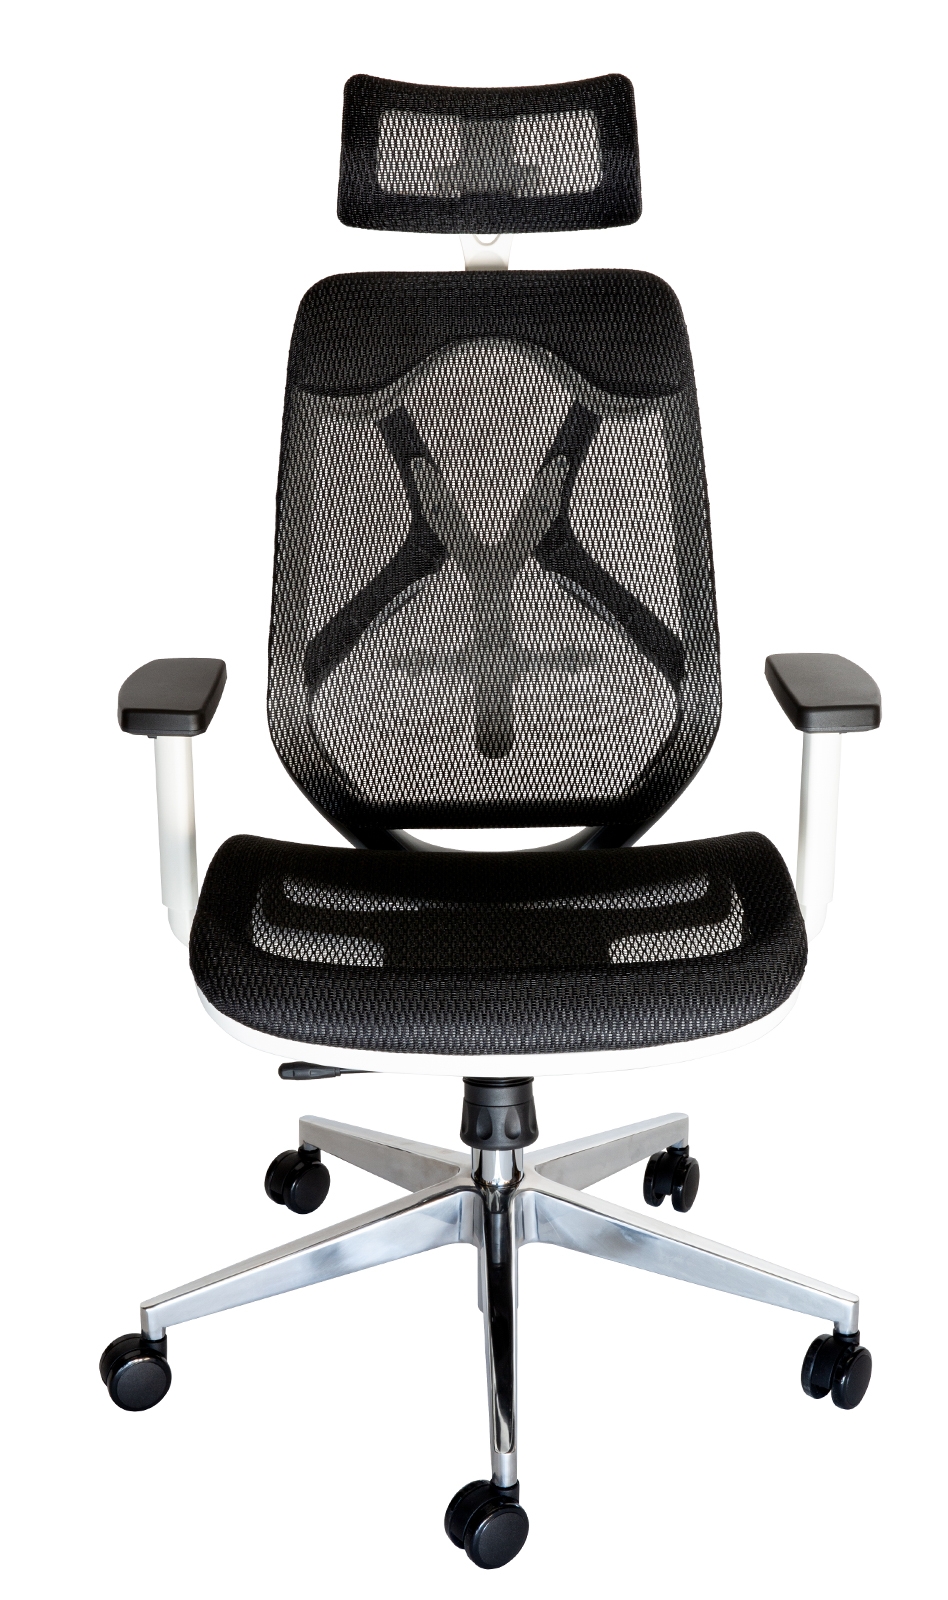 Ergomesh Ergonomic Japanese Mesh Desk / Office Chair | Black, White & Grey